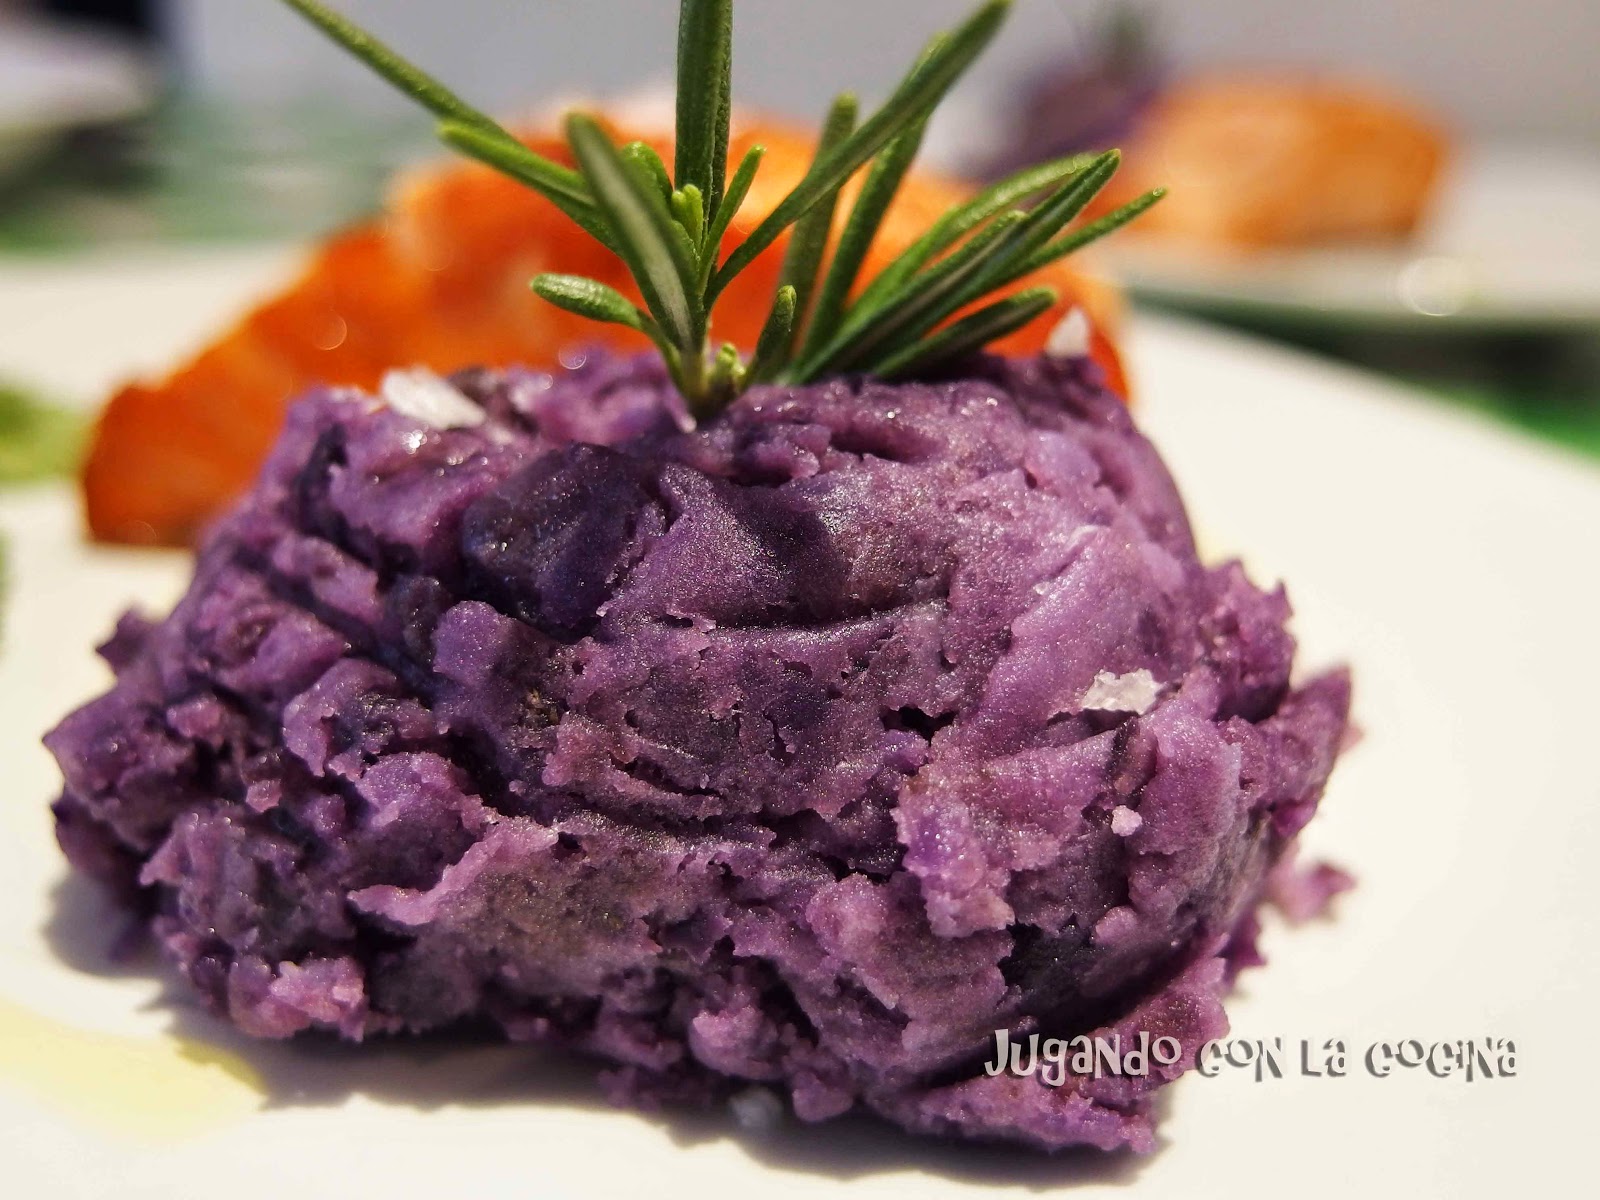 Puré de patata violeta con huevo mollet